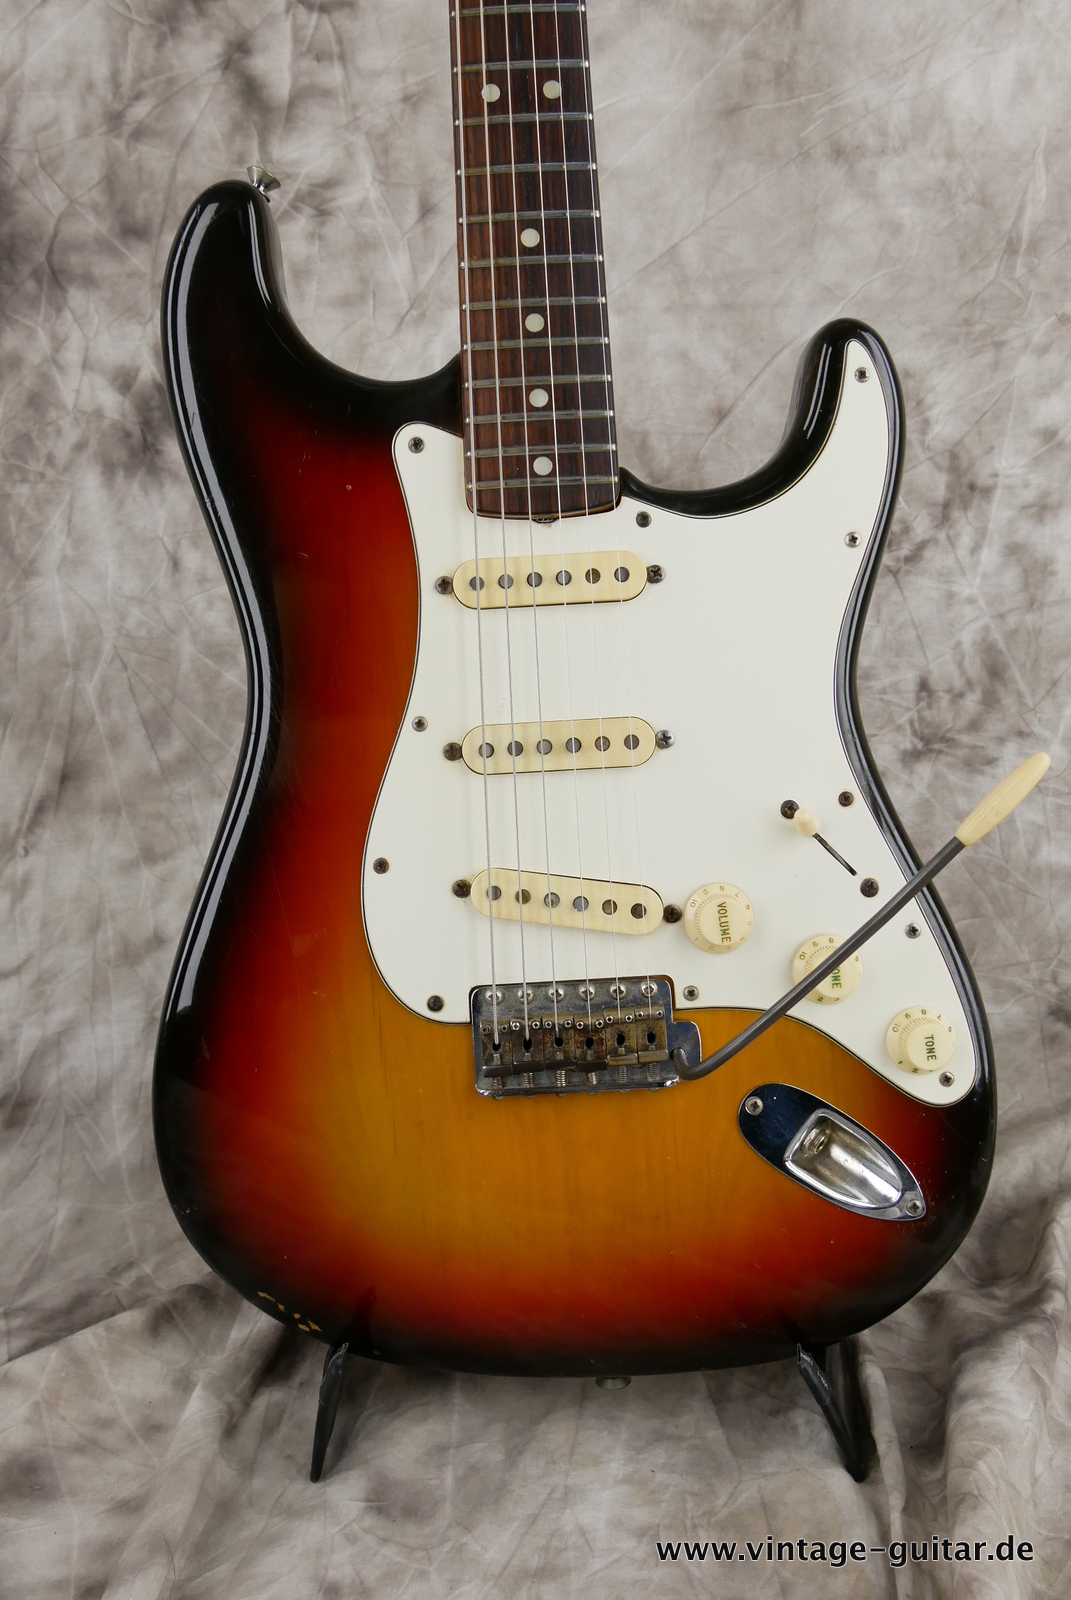 Fender-Stratocaster-1971-sunburst-4-hole-002.JPG